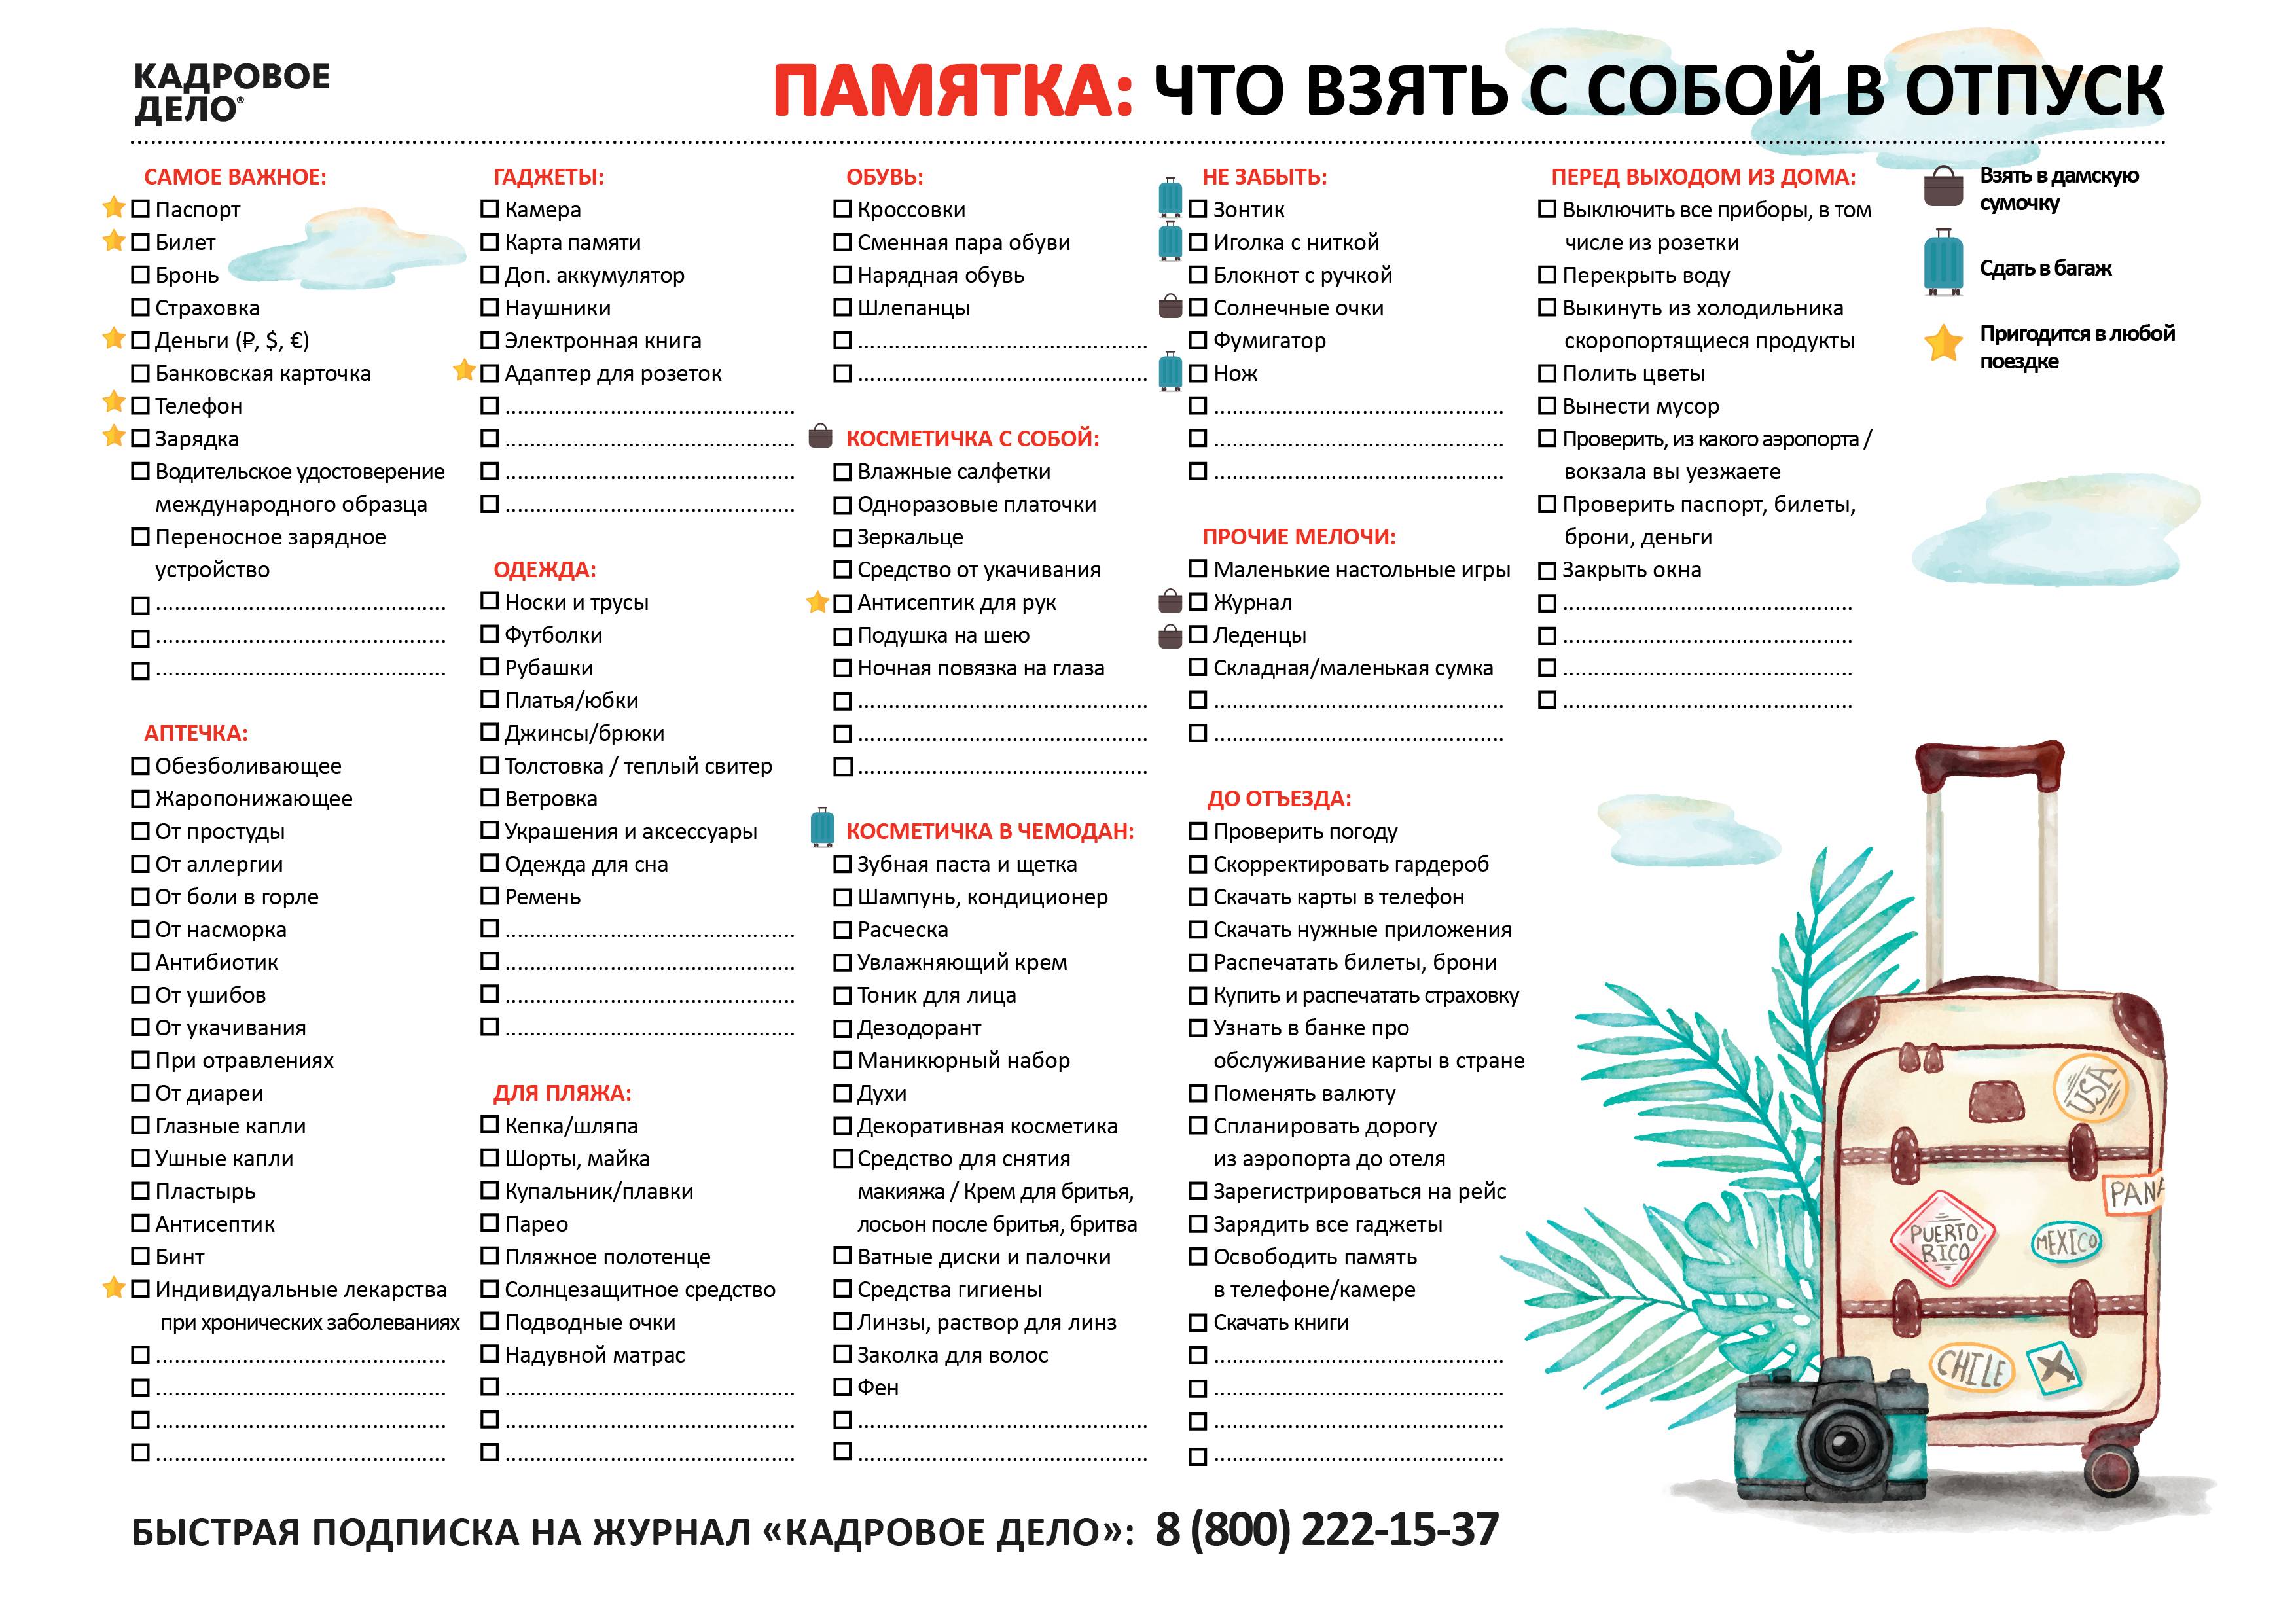 Собираемся в отпуск: 5 гаджетов, которые пригодятся на отдыхе| ichip.ru